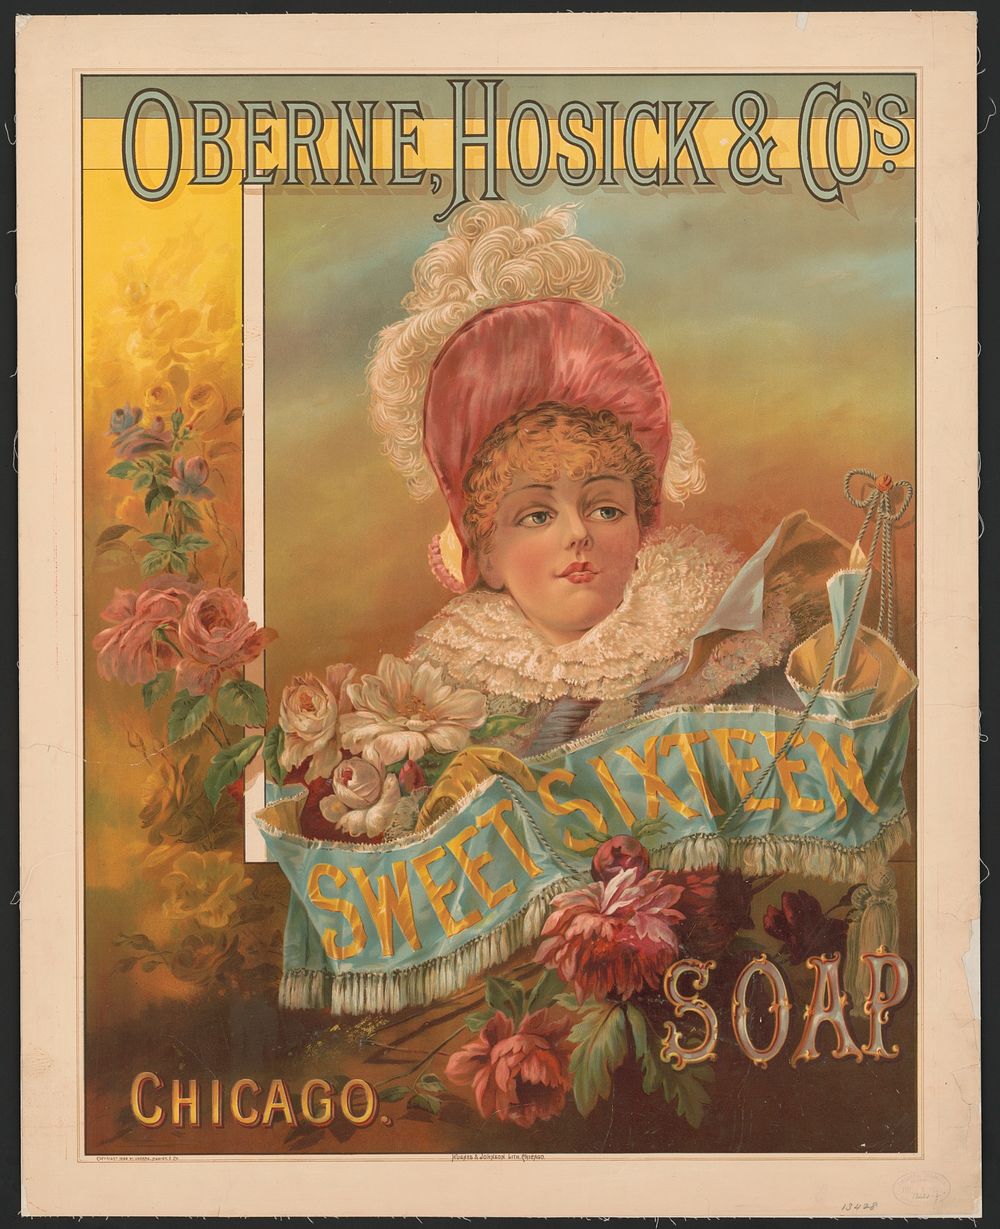 Oberne, Hosick & Co.'s sweet sixteen soap